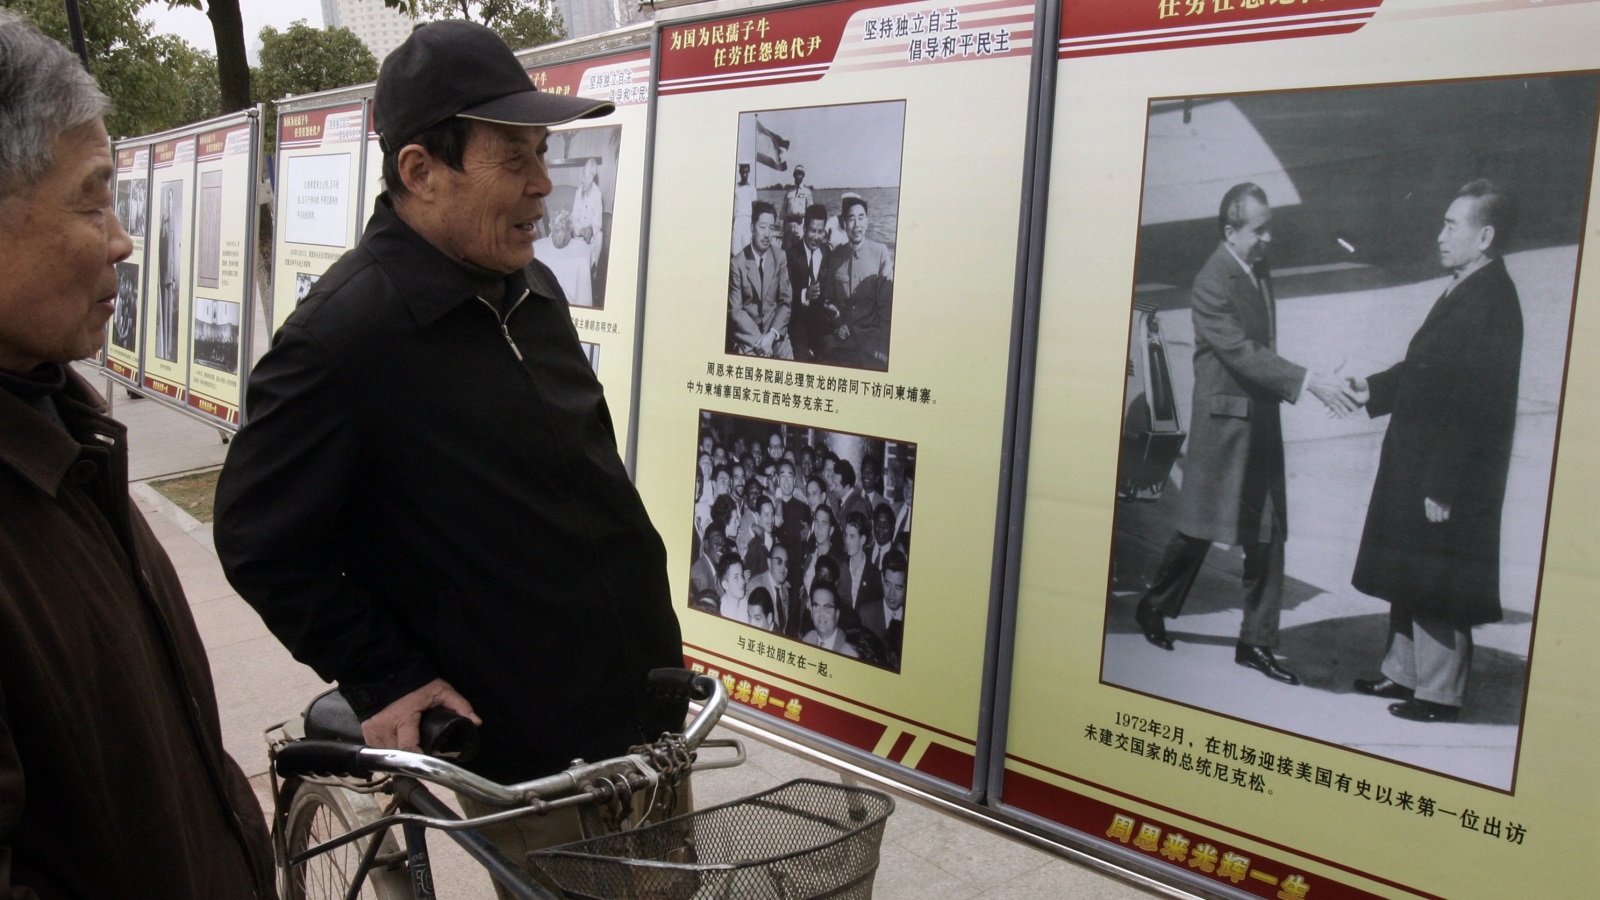 معرض صور في الصين يظهر نيكسون لدى زيارته الصين (غيتي-أرشيف)